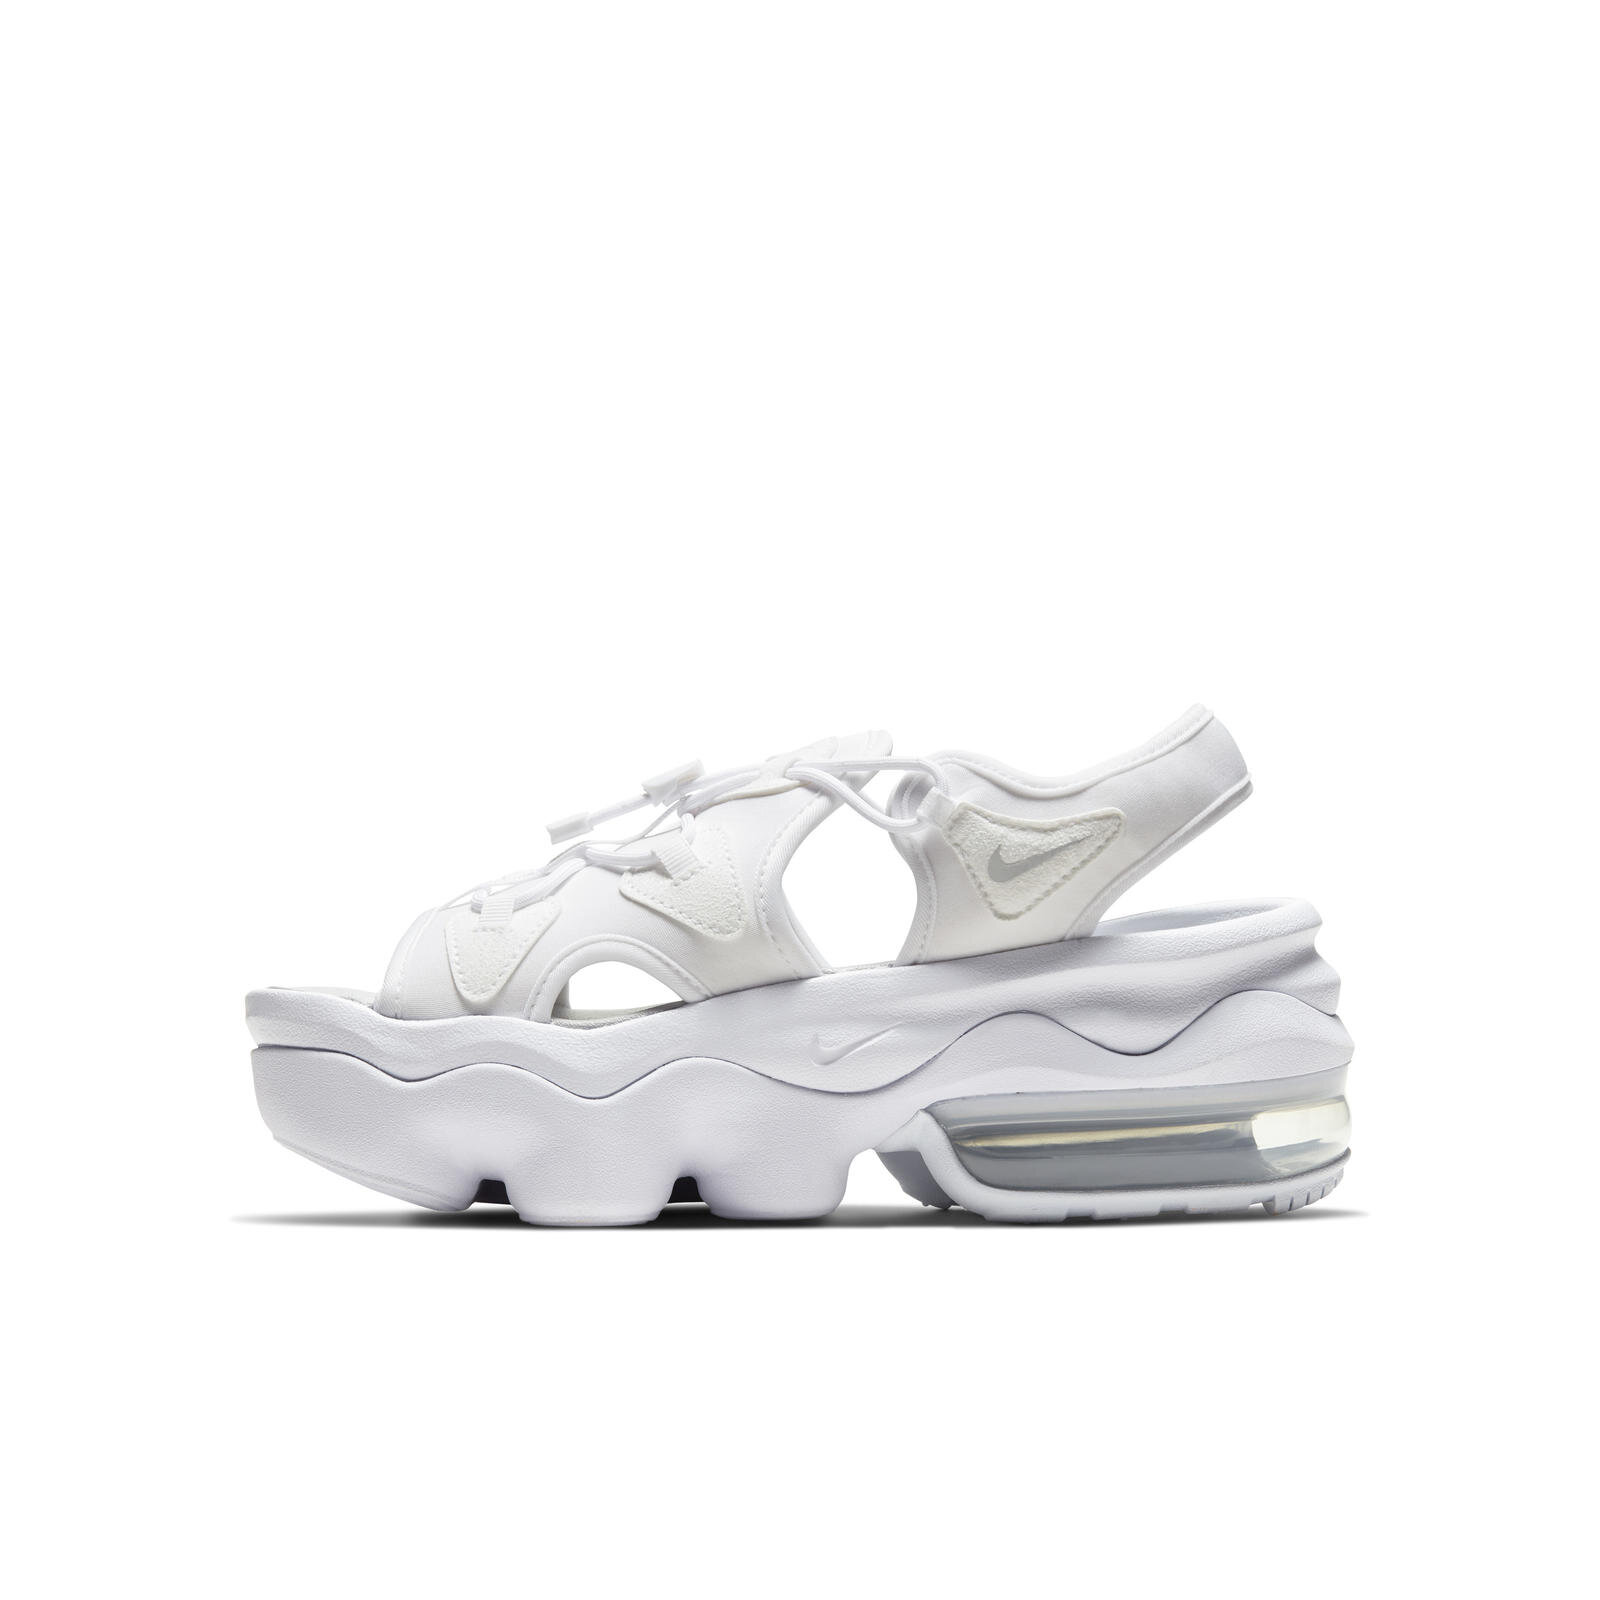 Nike Air koko sandals Max Koko Sandal — The Collector's Catalog